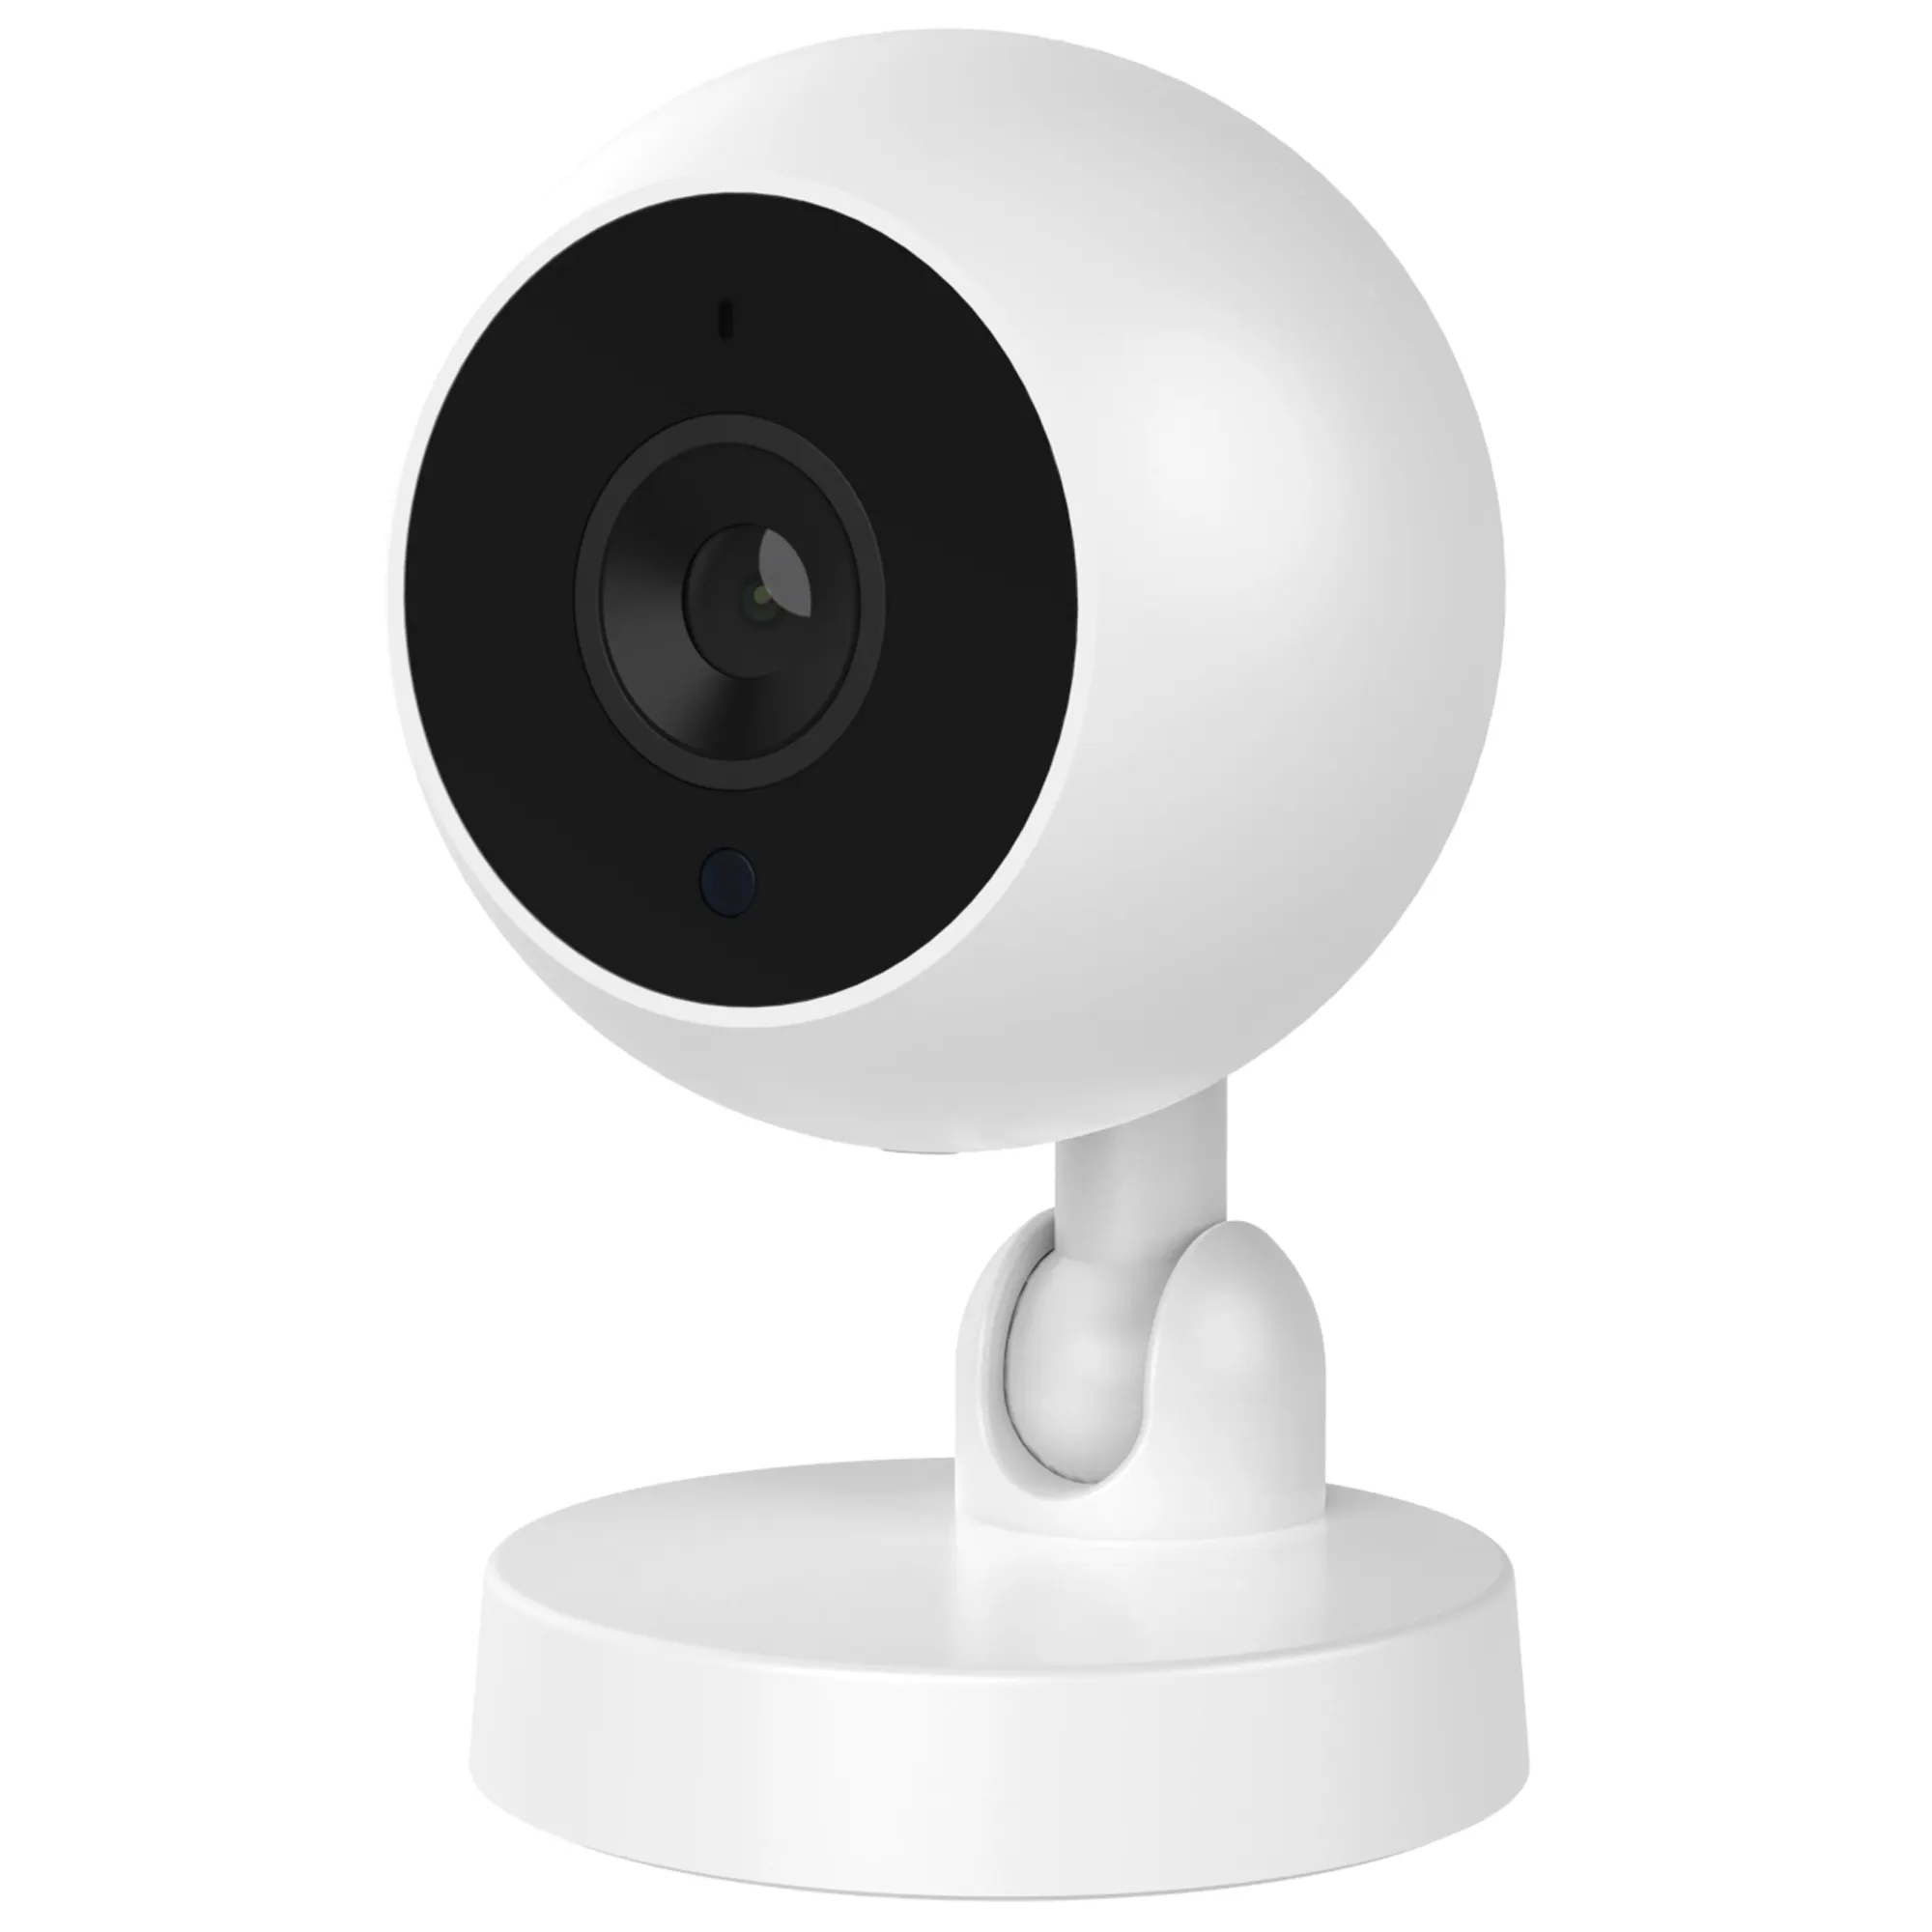 1 год гарантии Wilress CCTV система мини-видеокамера 640P HD ночного видения WIFI IP-камера мини CCTV беспроводные камеры